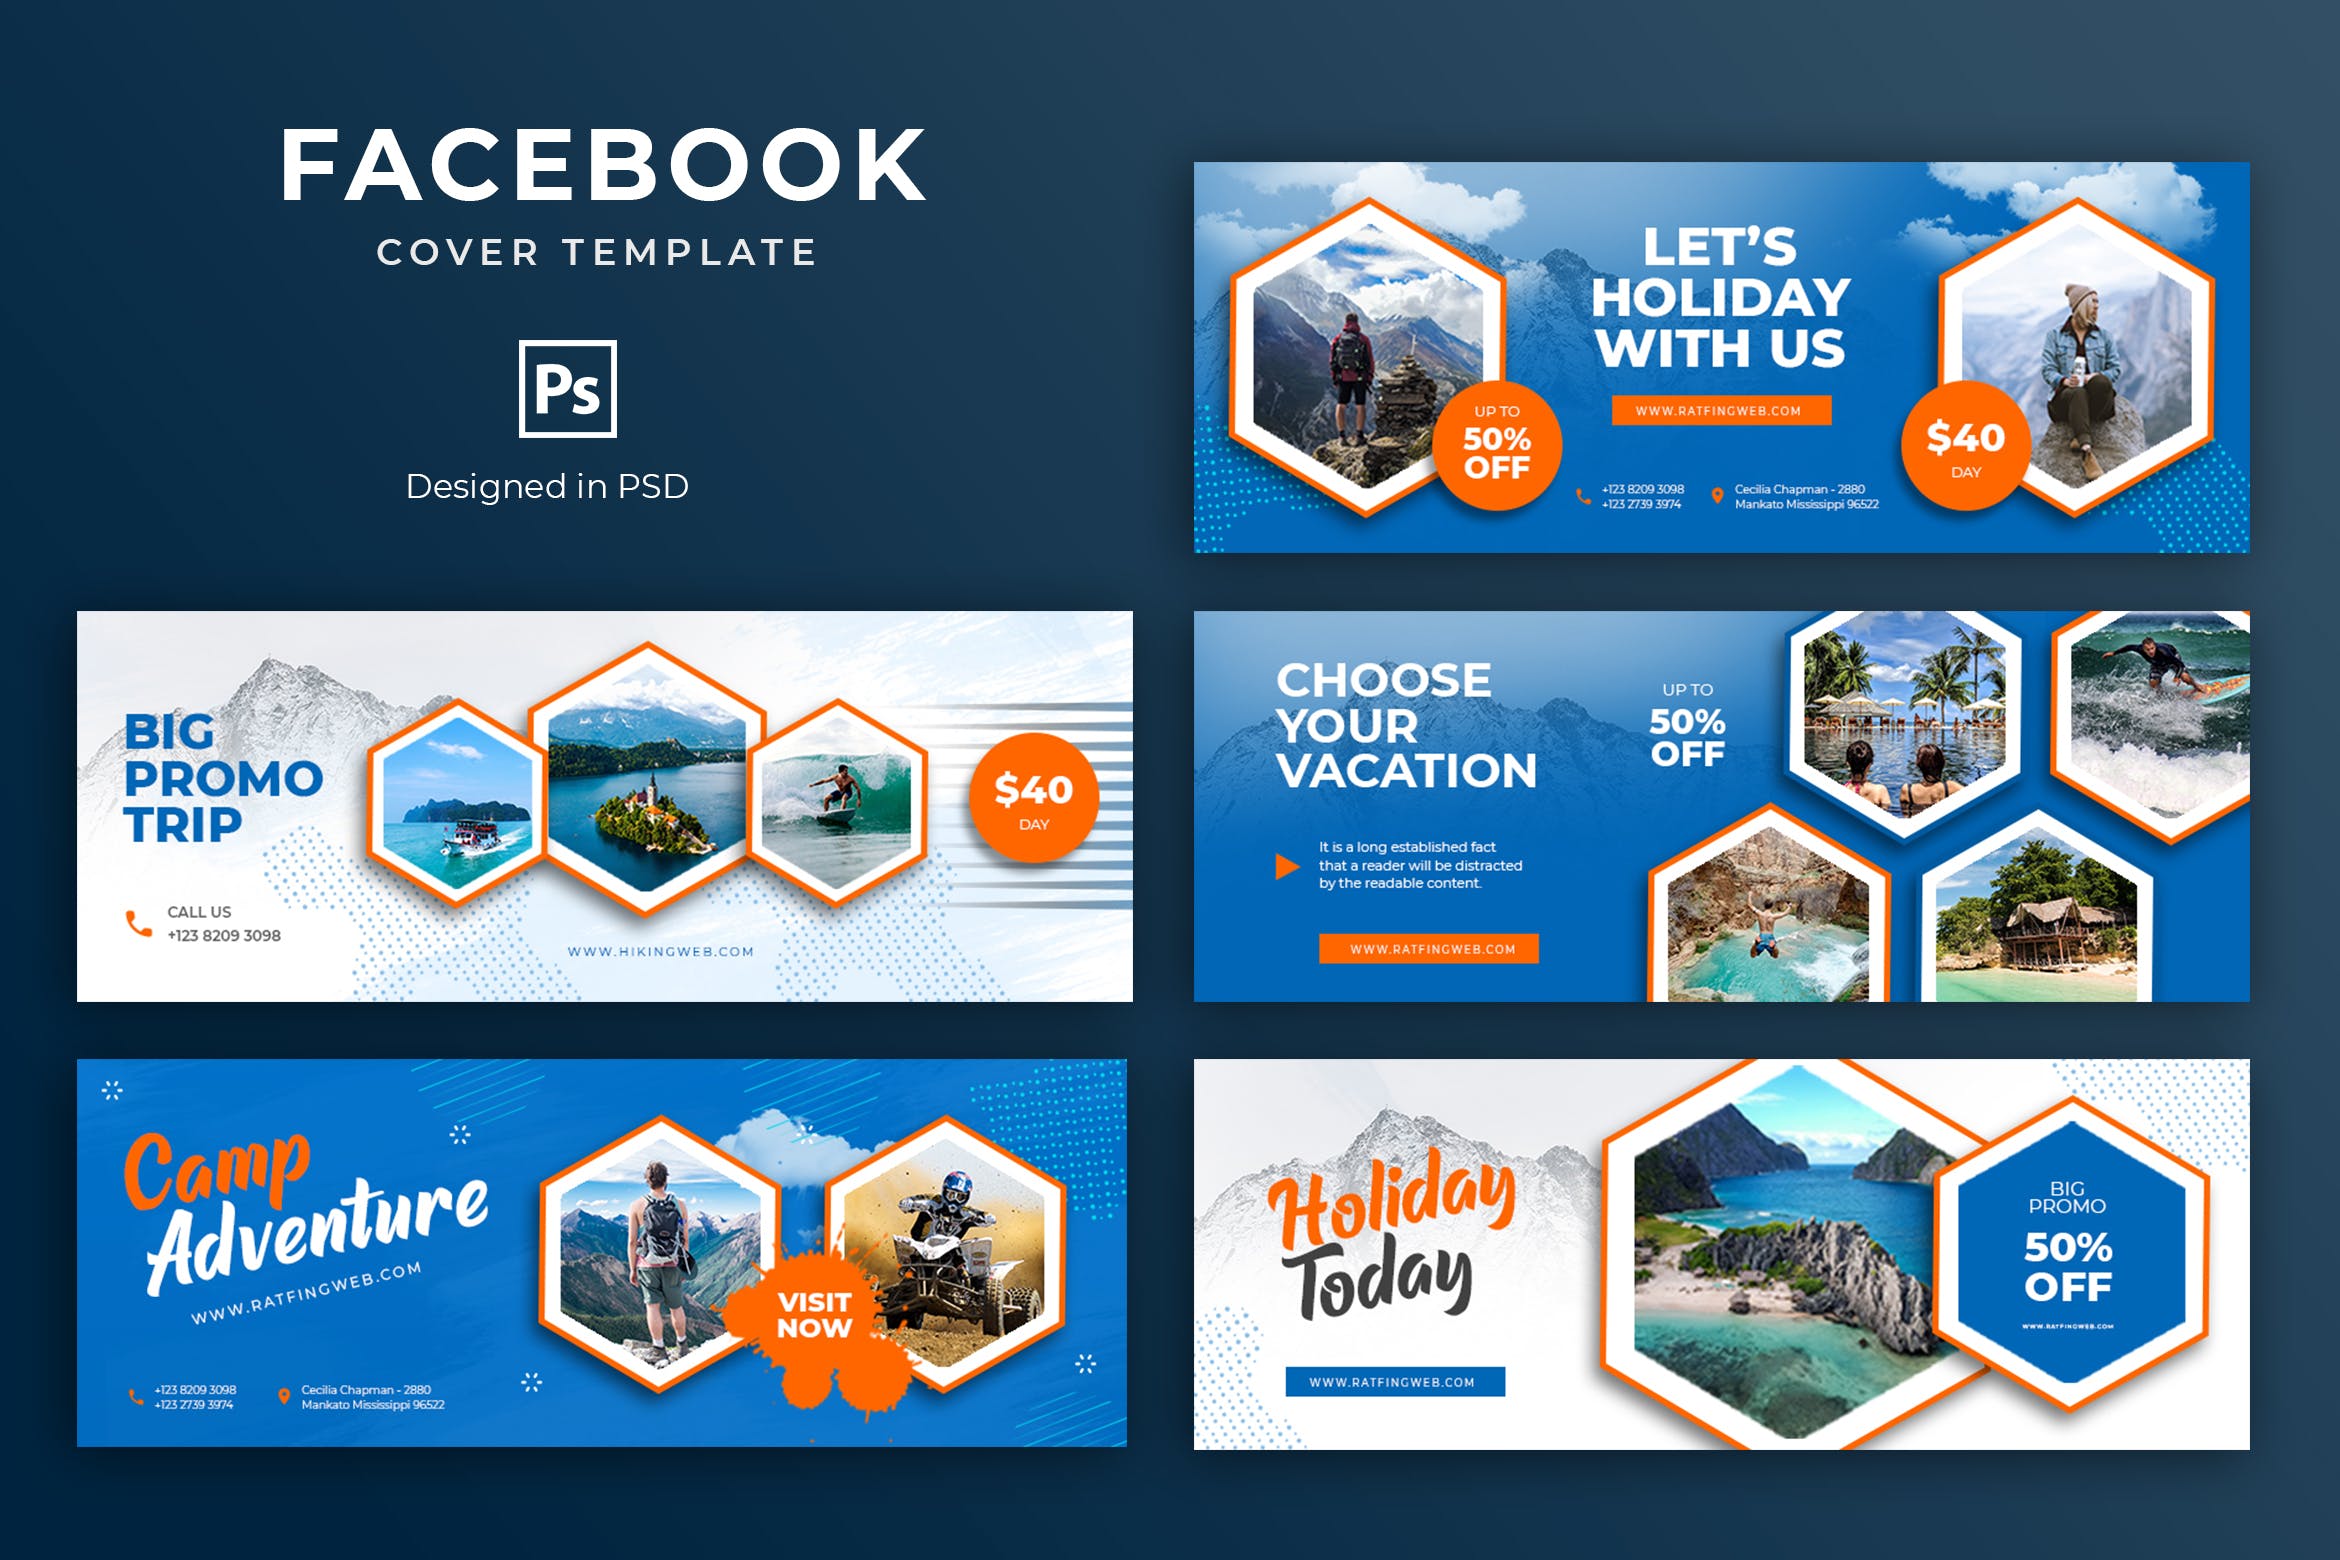 旅游度假主题Facebook主页封面设计模板素材库精选 Holiday Facebook Cover Template插图